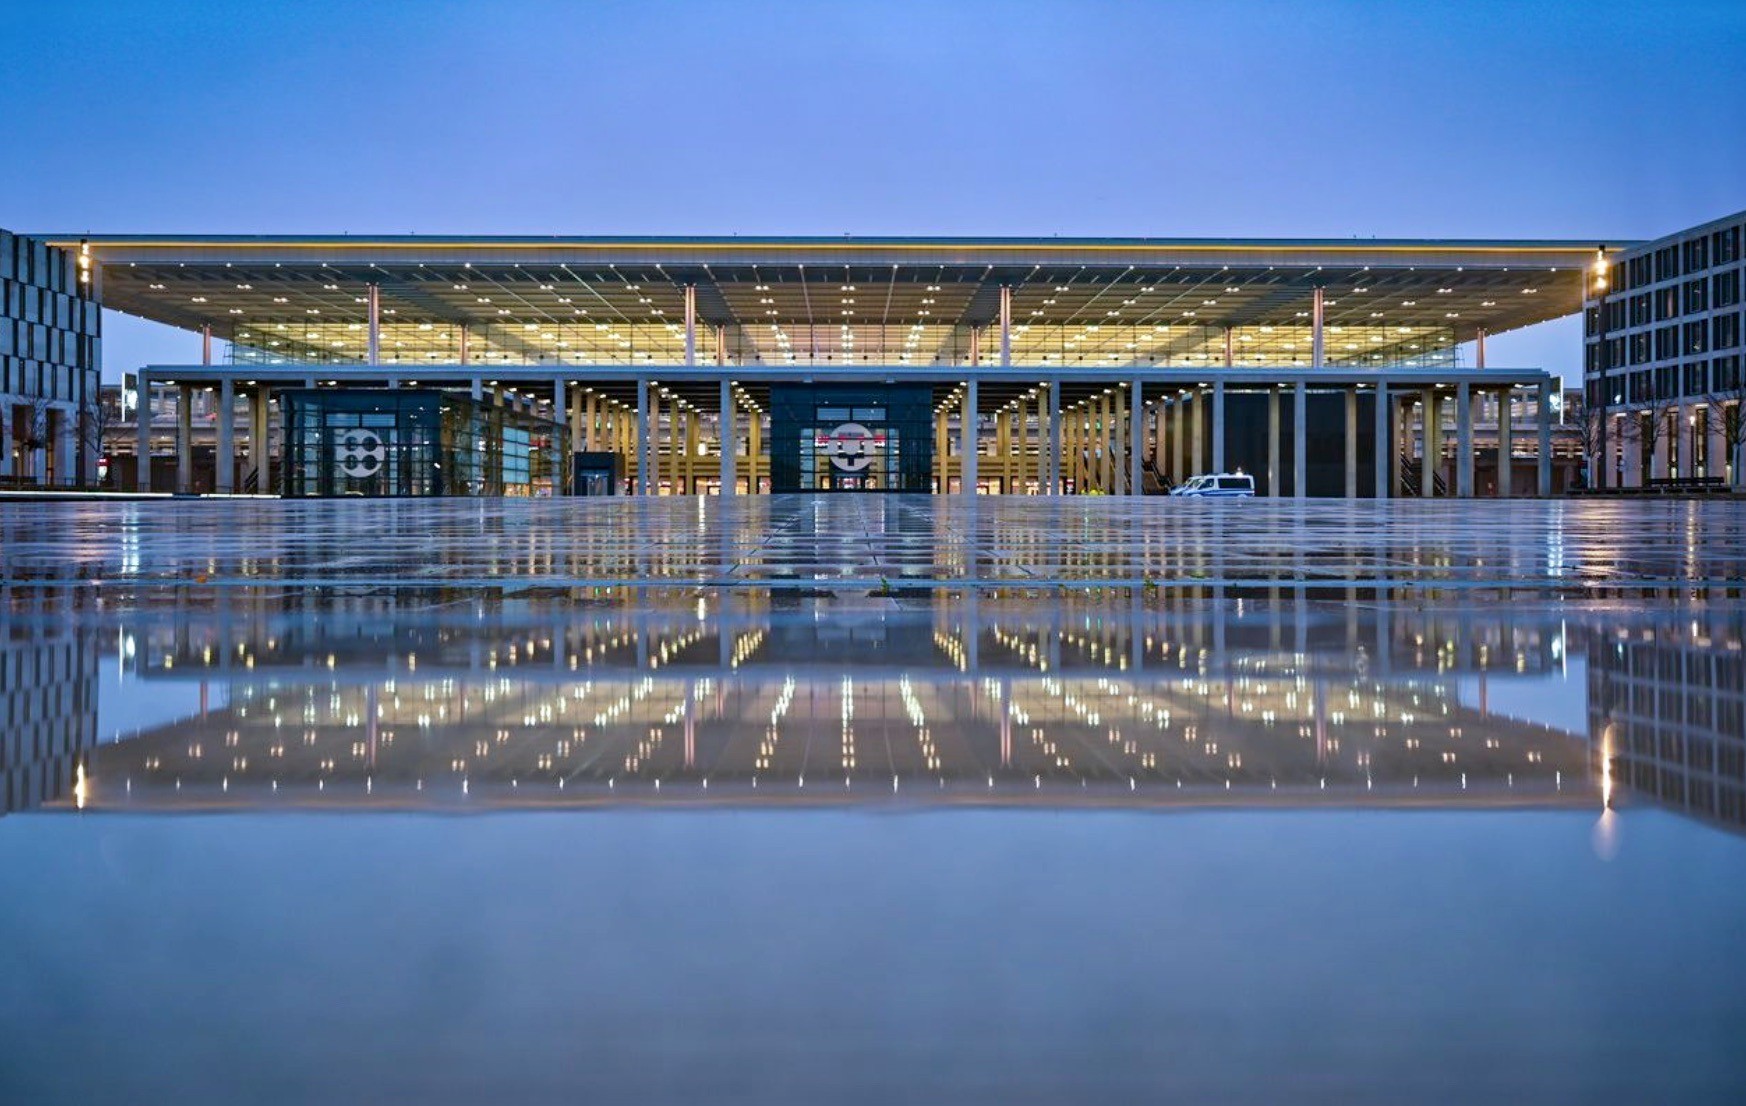 Endlich ist es so weit: BER ist fertiggestellt. In voller Beleuchtung präsentiert sich das Terminal 1 des Hauptstadtflughafens Berlin Brandenburg „Willy Brandt“ (BER) am frühen Morgen des 31. Oktober 2020. Der Flughafen wird heute nach neunjähriger Verzögerung eröffnet. (Keystone/DPA, Patrick Pleul)